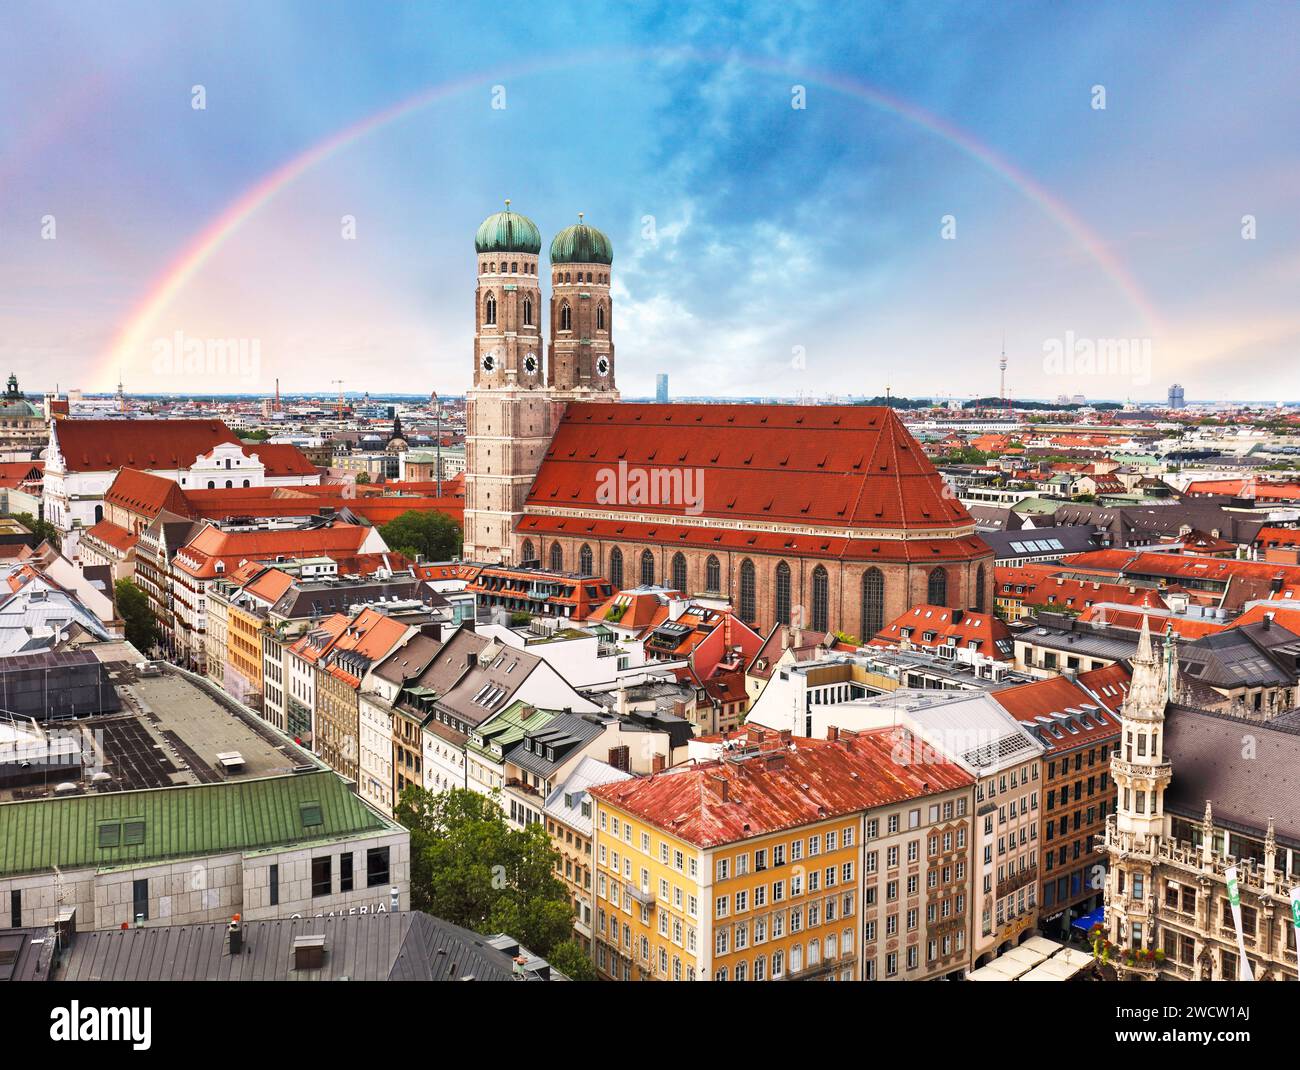 Arc-en-ciel au-dessus du centre-ville de Munich avec Marienplatz - Hôtel de ville en Allemagne Banque D'Images